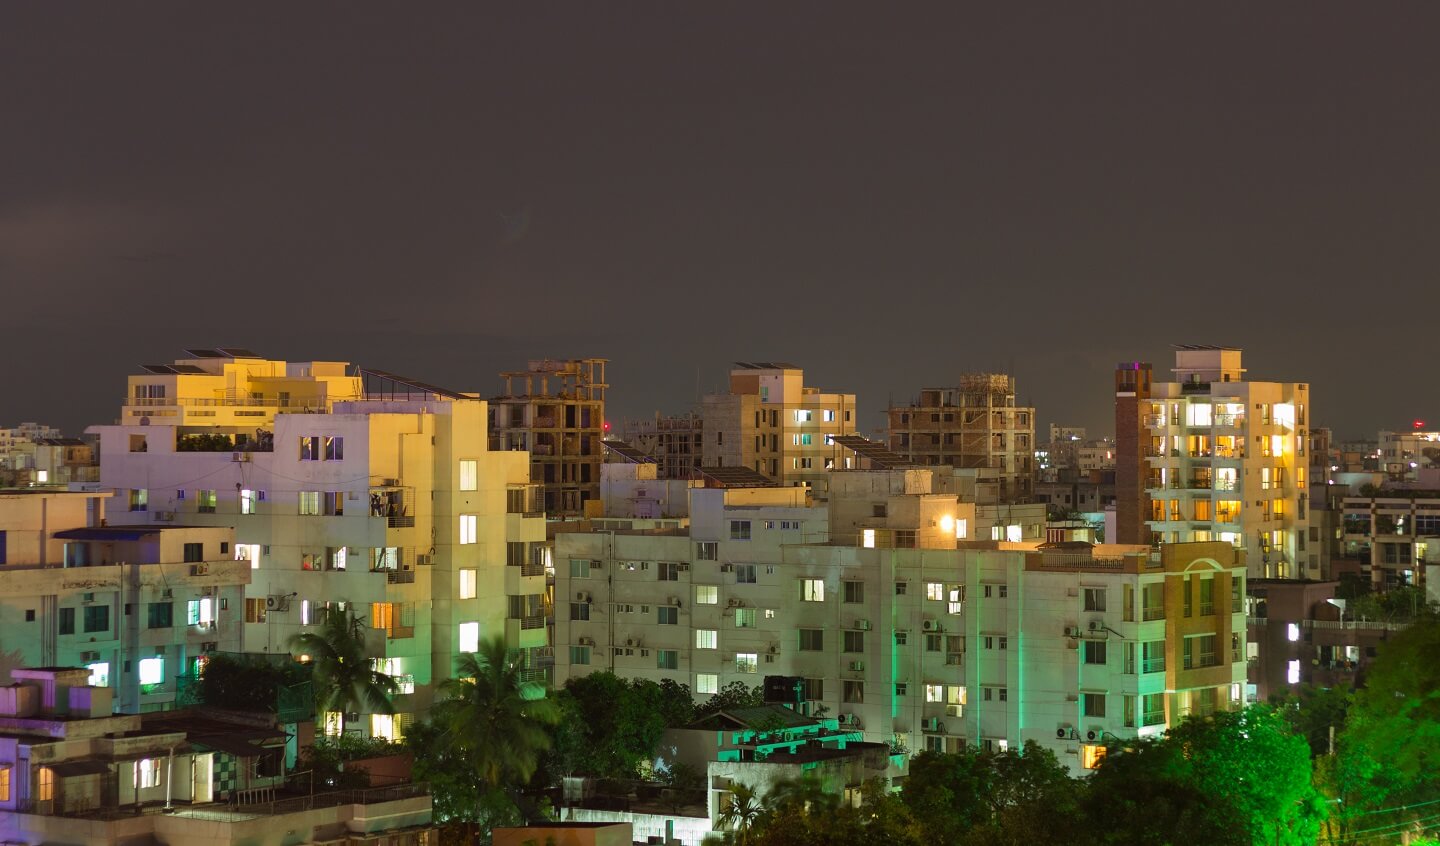 Uttara tops the list of housing trends in Dhaka